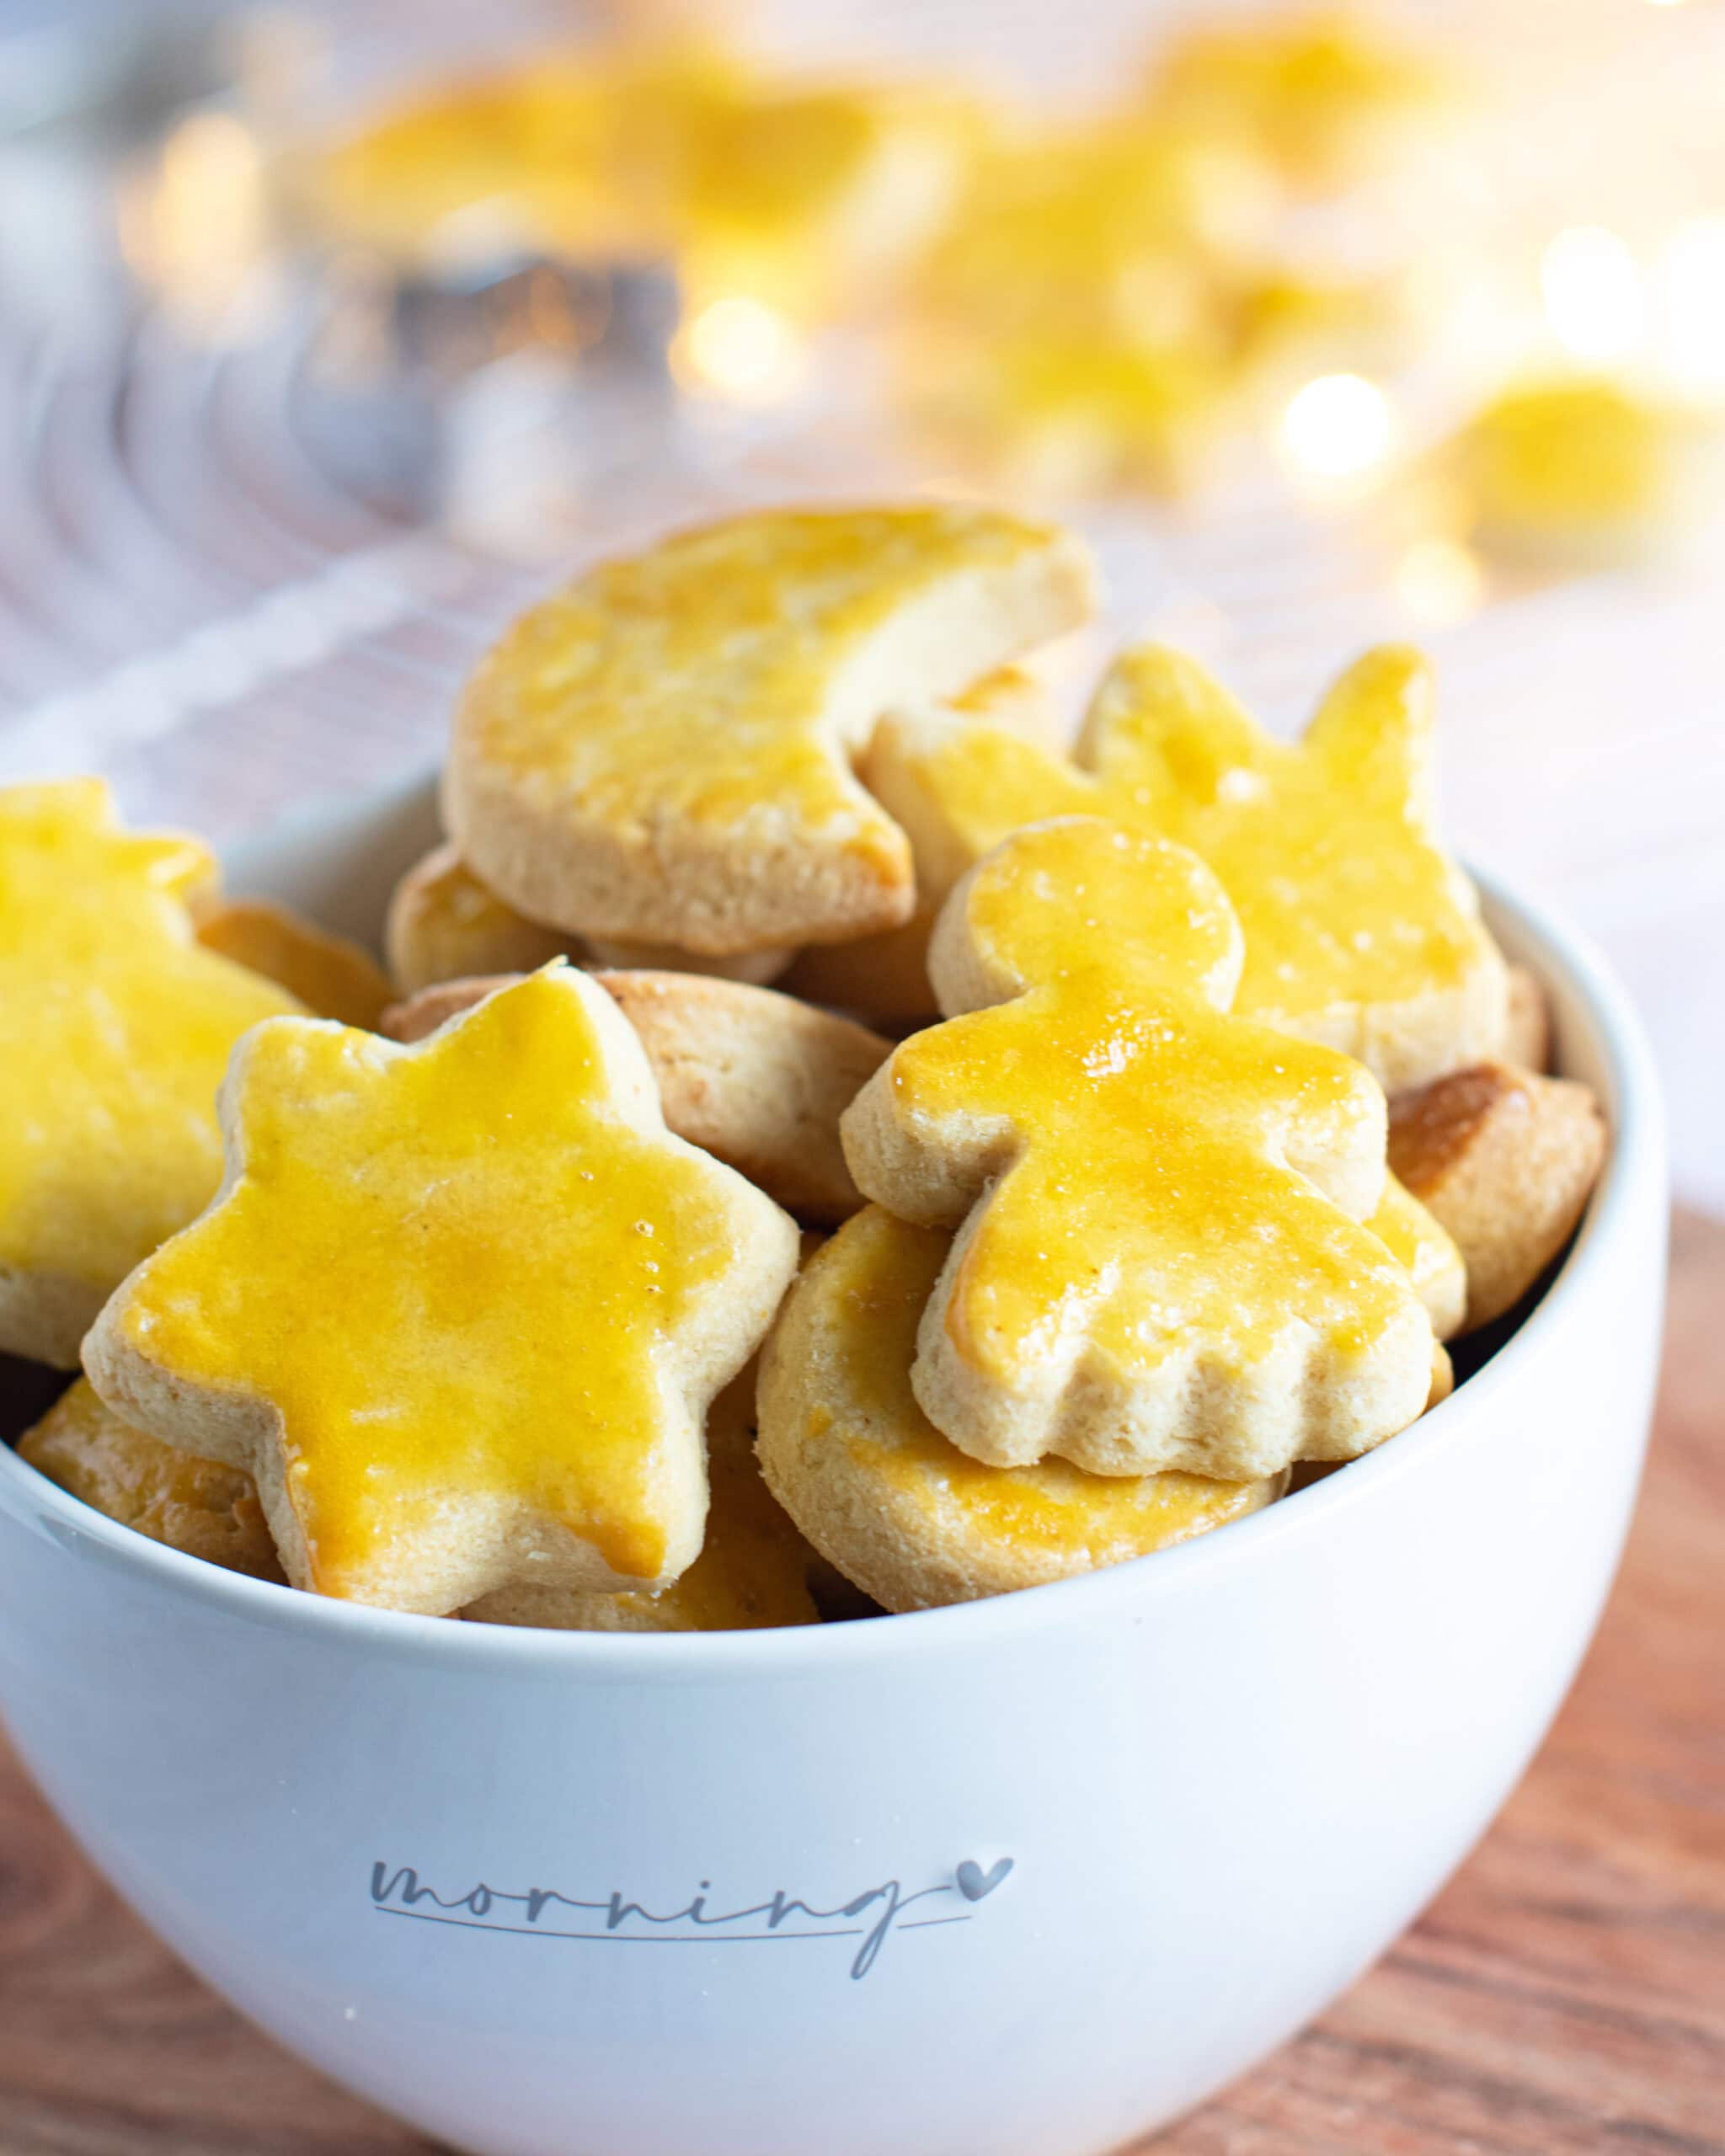 Biscuits au beurre, facile à faire, peu sucré. Un incontournable des biscuits de Noël en Suisse.